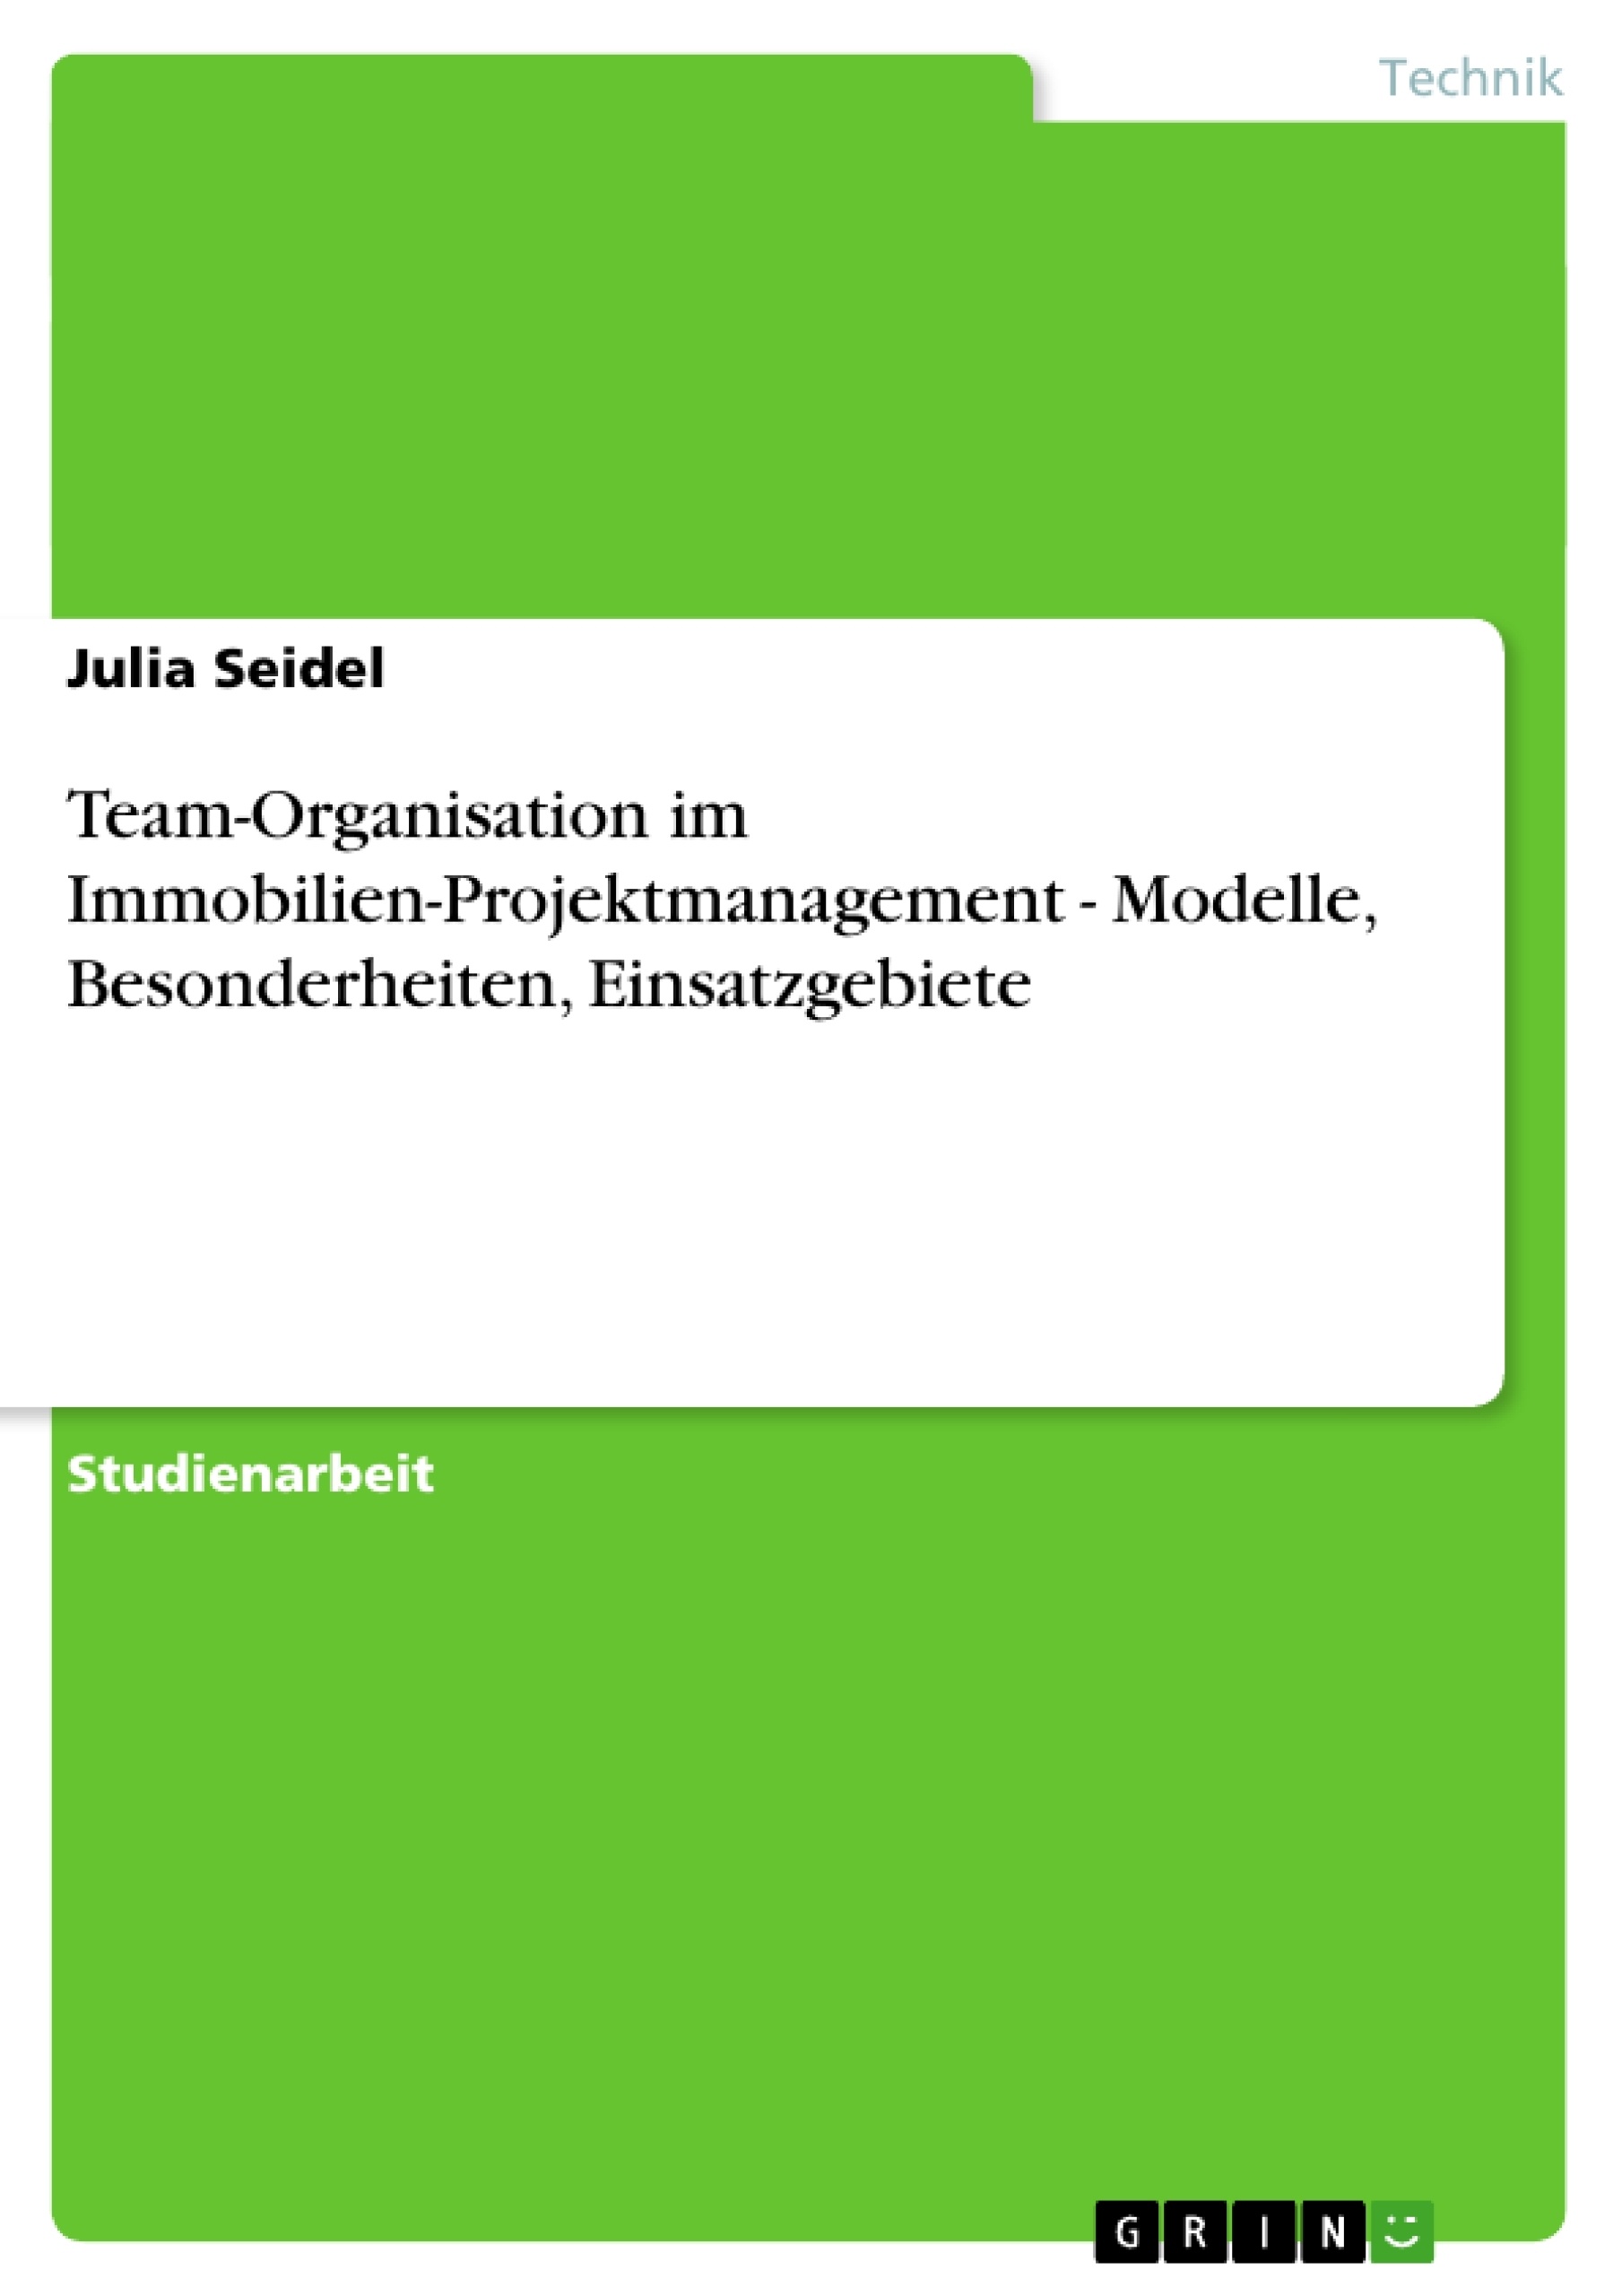 Título: Team-Organisation im Immobilien-Projektmanagement - Modelle, Besonderheiten, Einsatzgebiete